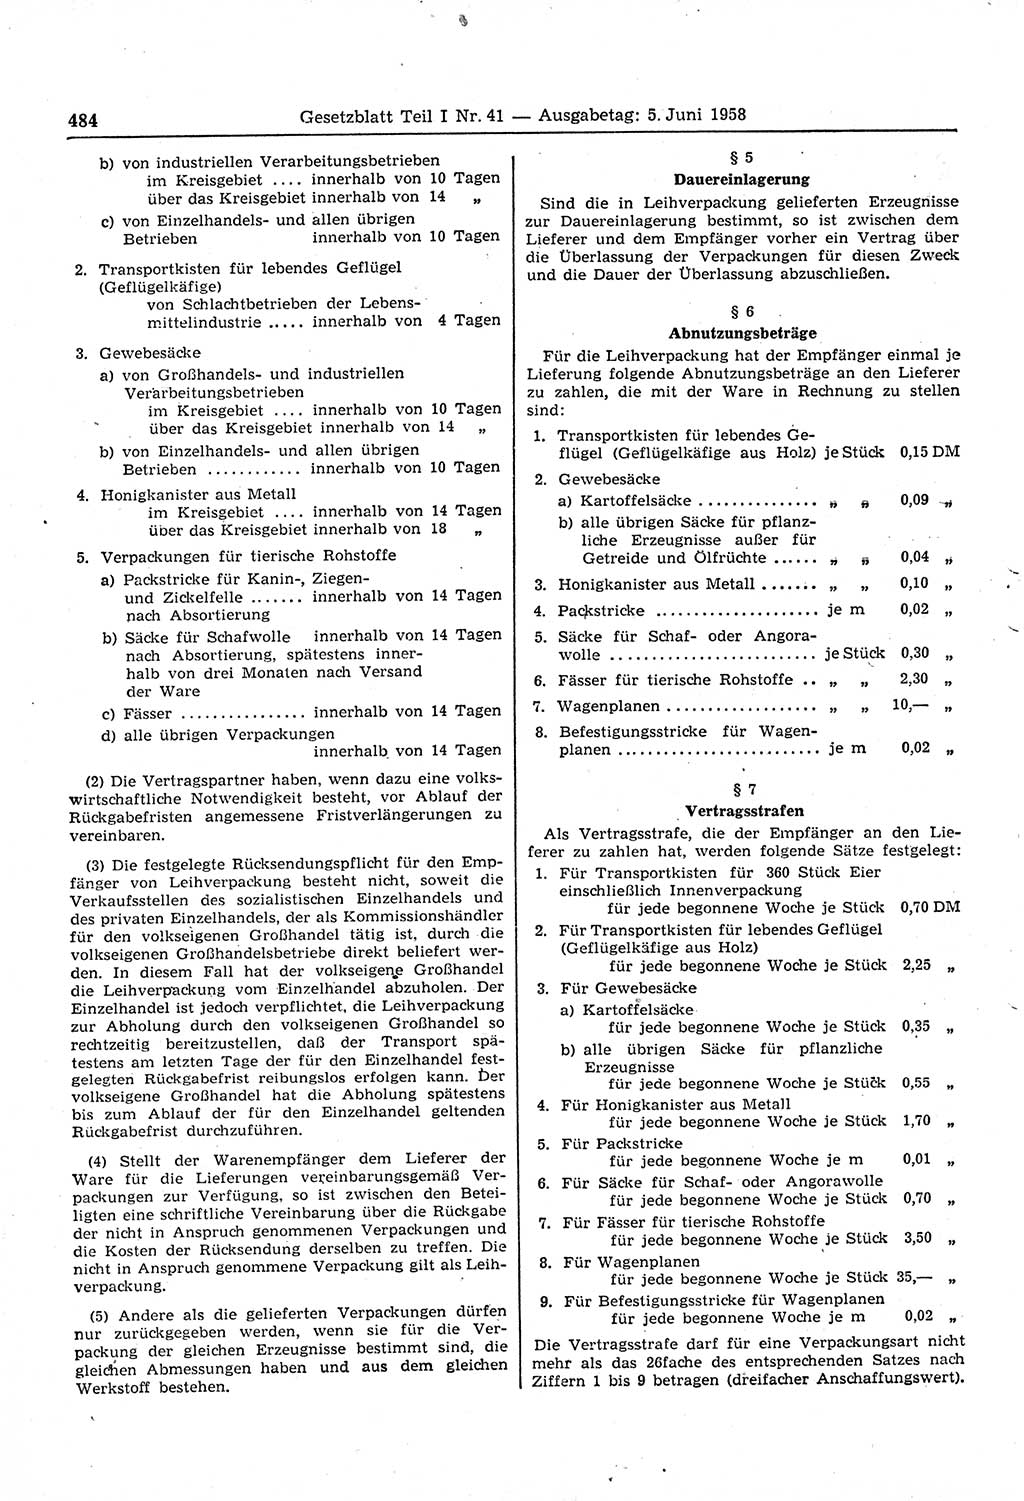 Gesetzblatt (GBl.) der Deutschen Demokratischen Republik (DDR) Teil Ⅰ 1958, Seite 484 (GBl. DDR Ⅰ 1958, S. 484)